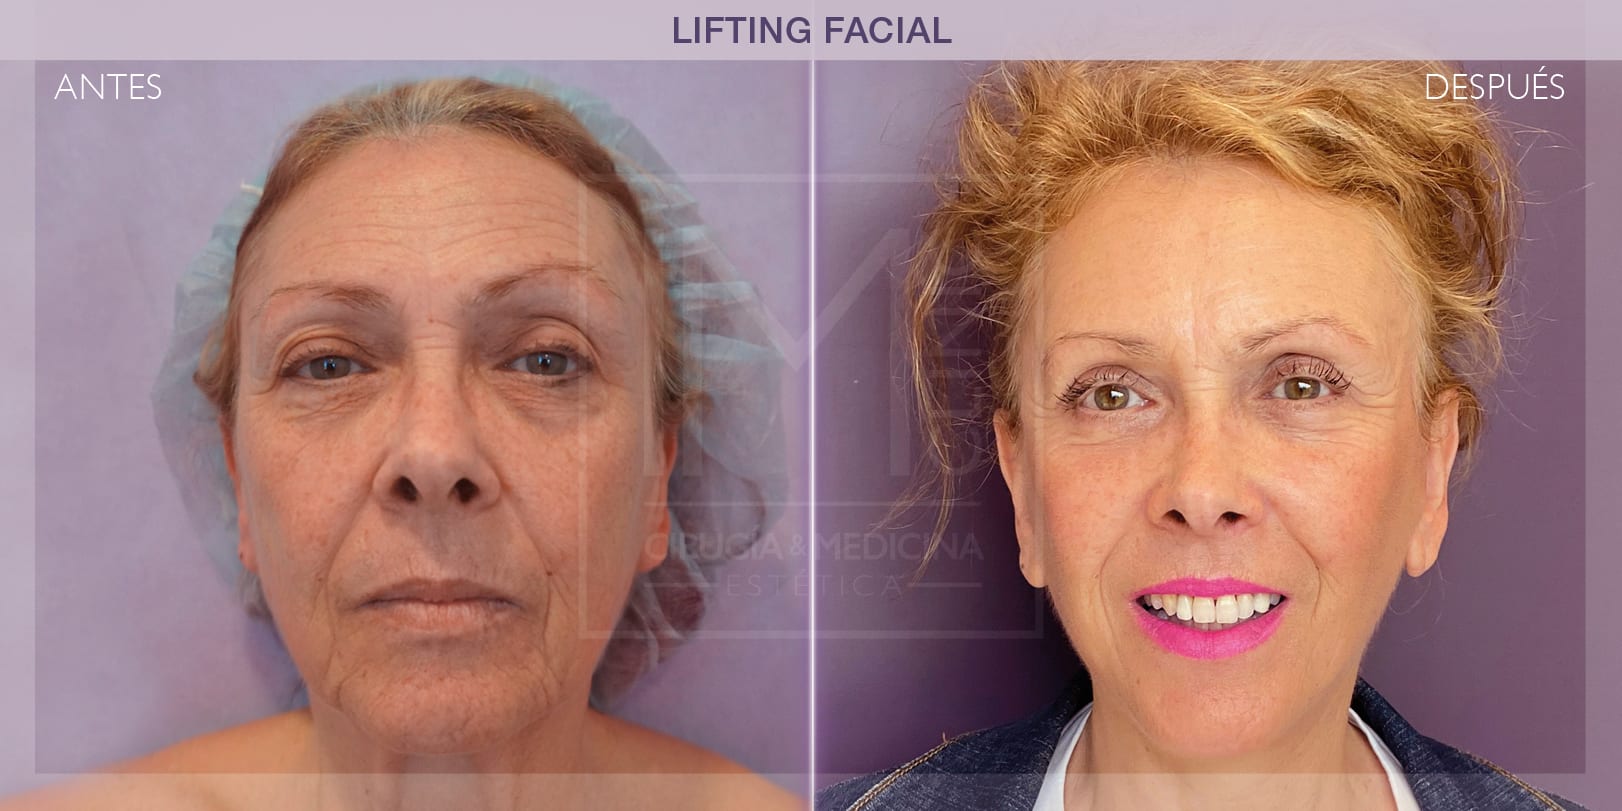 Rejuvenecimiento facial mediante lifting: antes y después